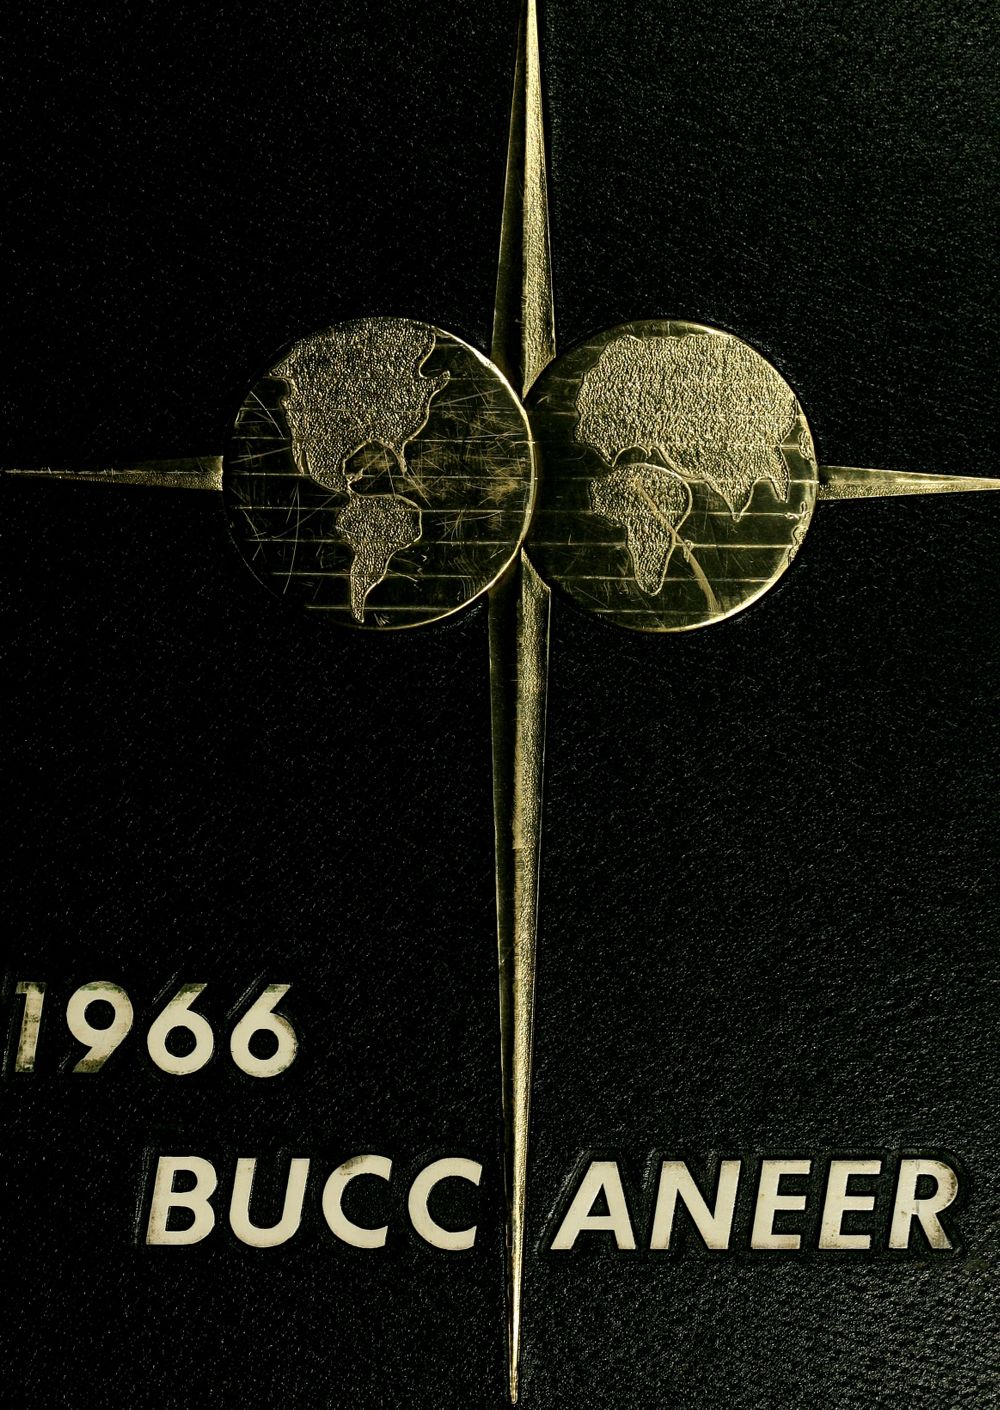 Buccaneer 1966